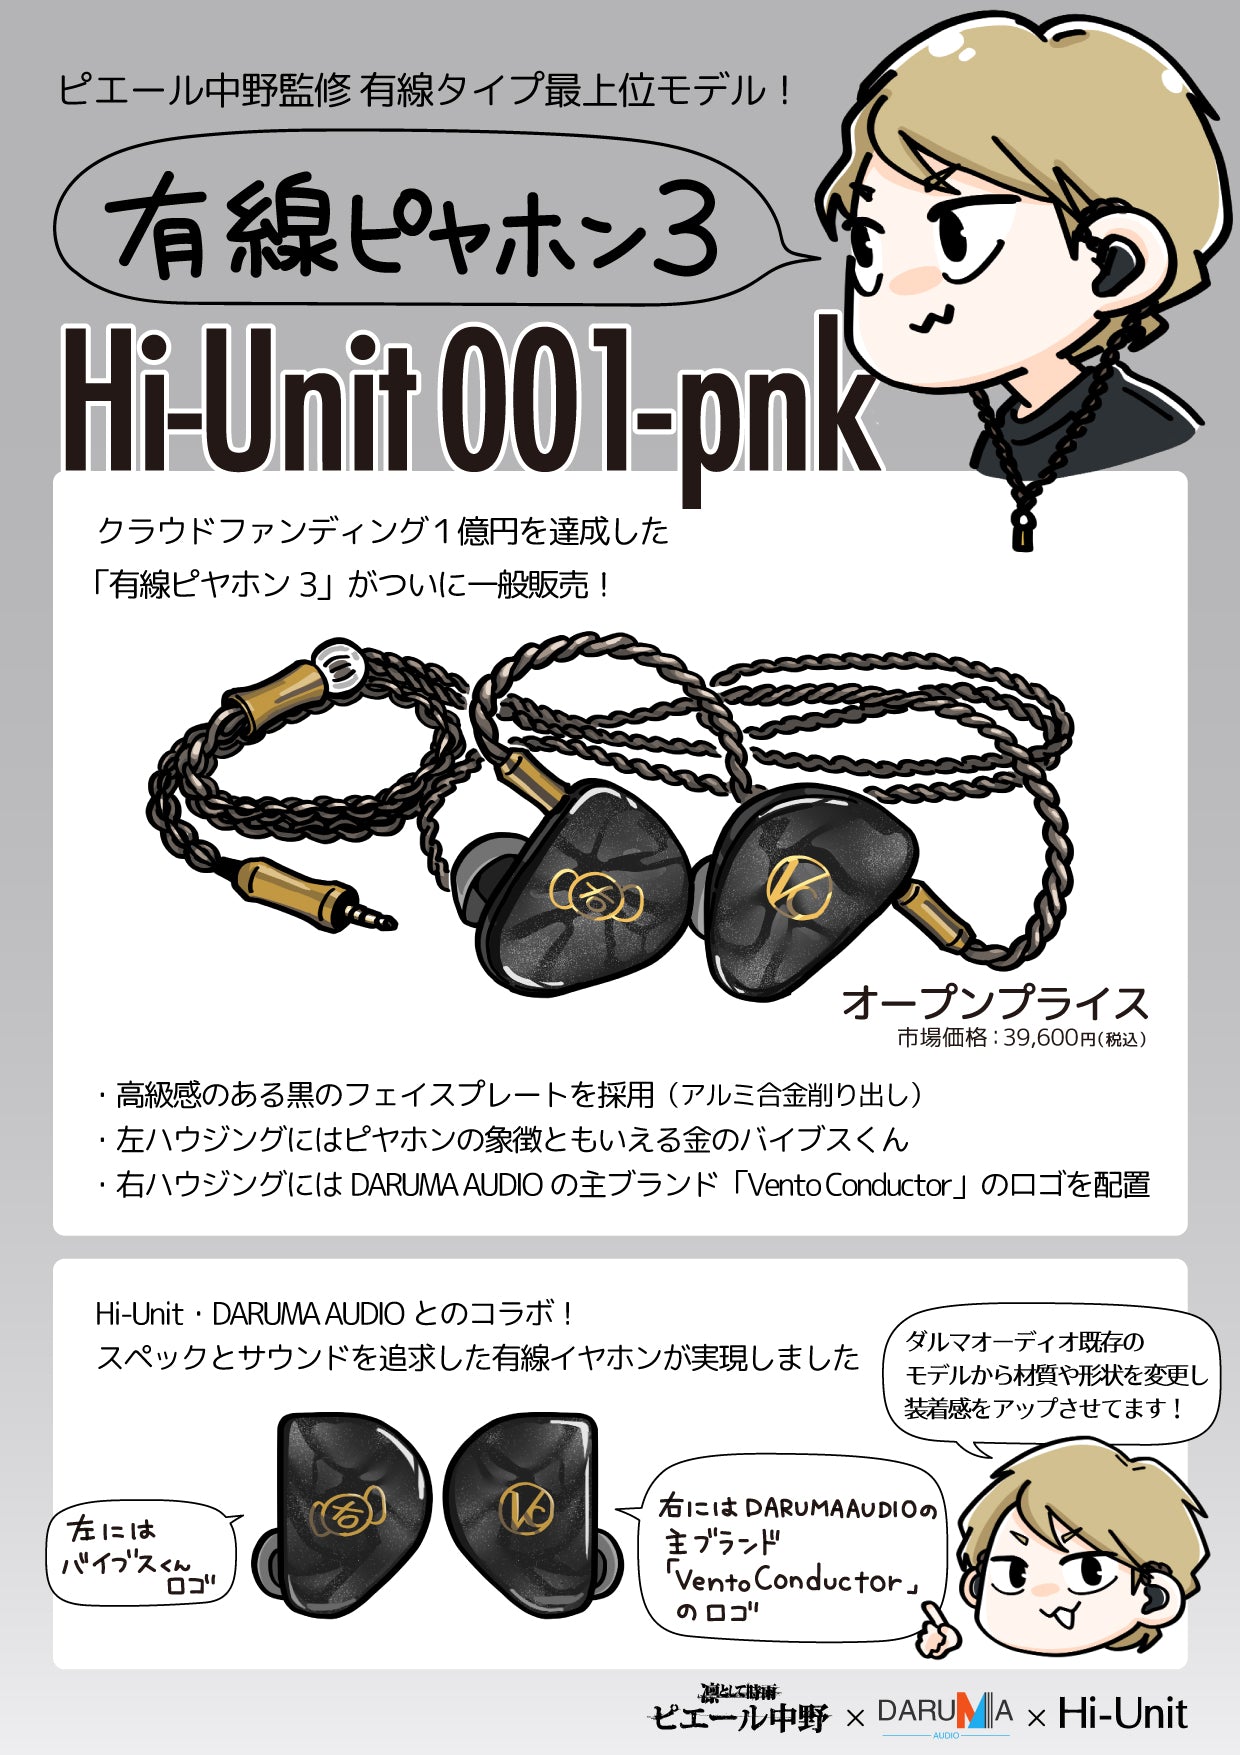 Hi-Unit 001-pnk 有線ピヤホン3 | www.innoveering.net